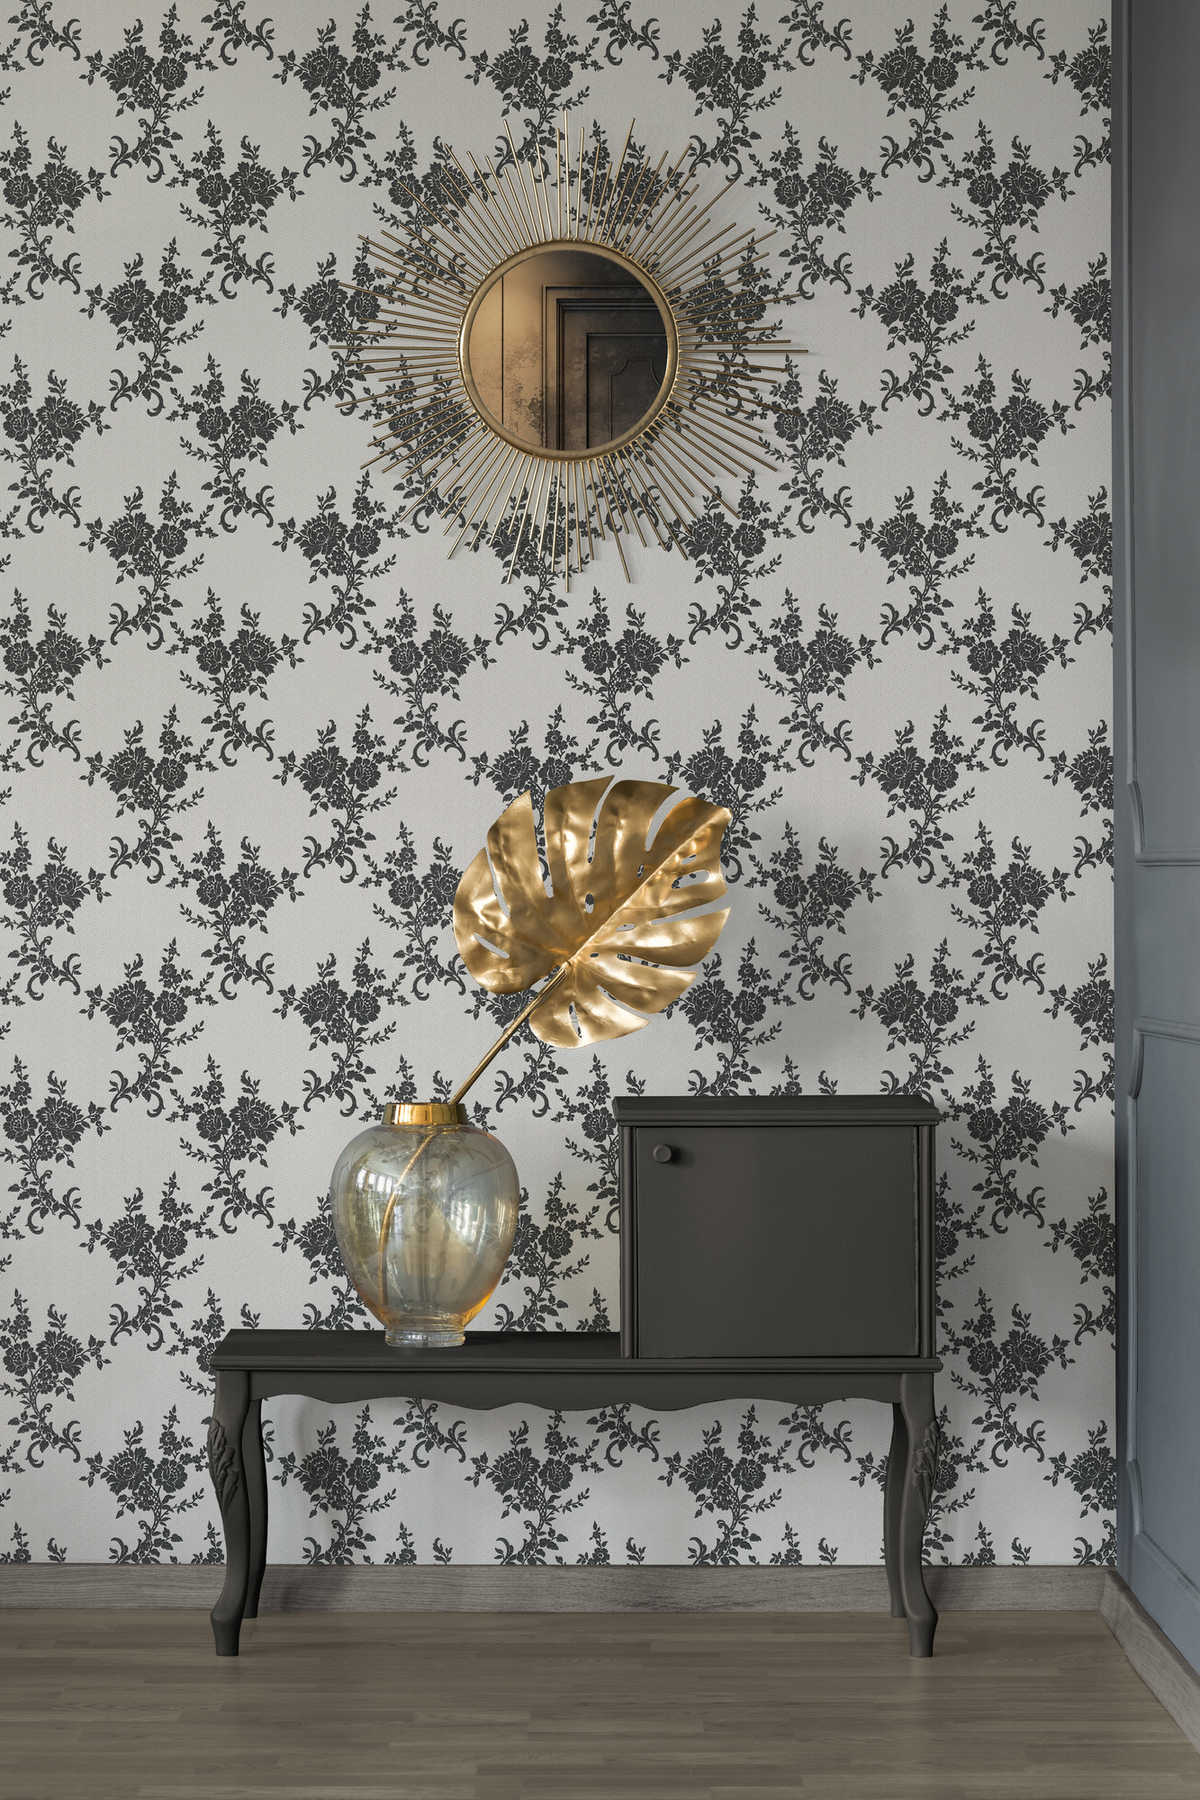             Wallpaper floral ornaments & chevron pattern - black, white, silver
        